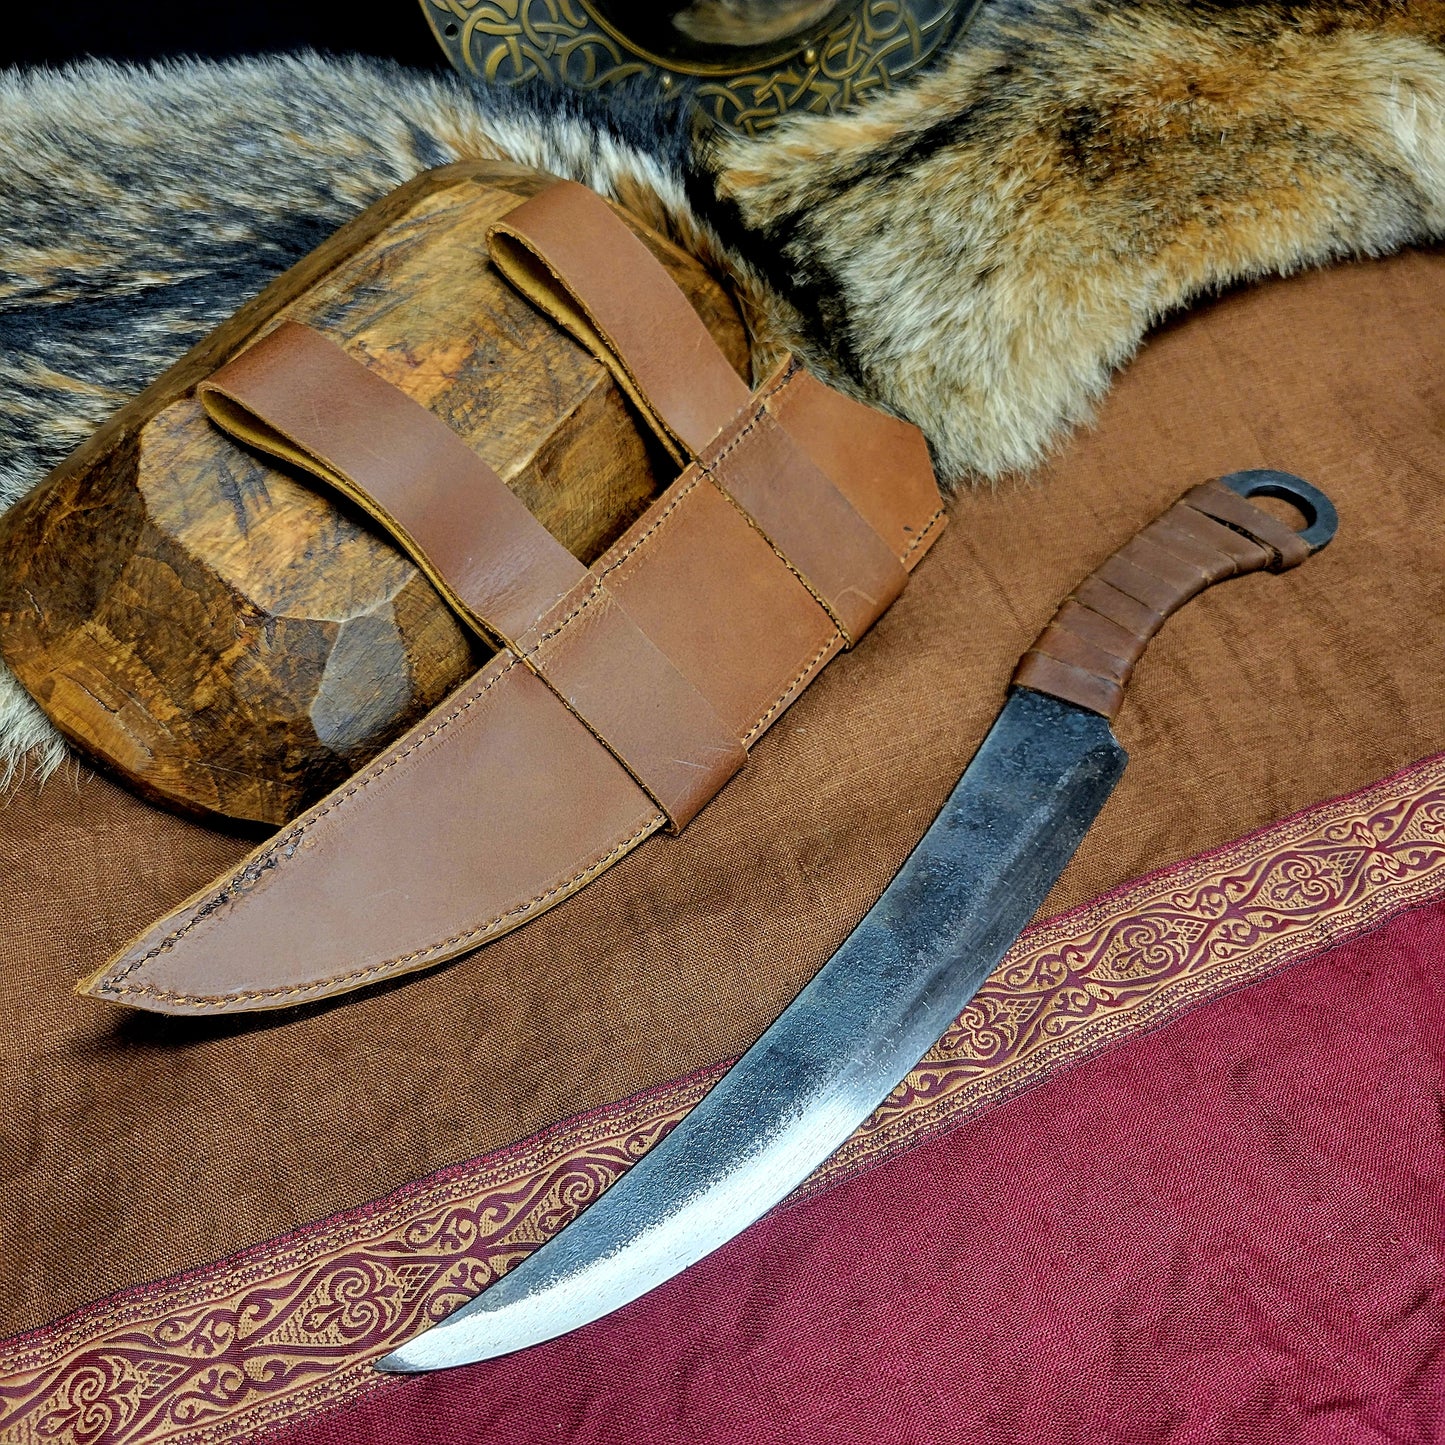 Medieval Huntsman Forged Dagger